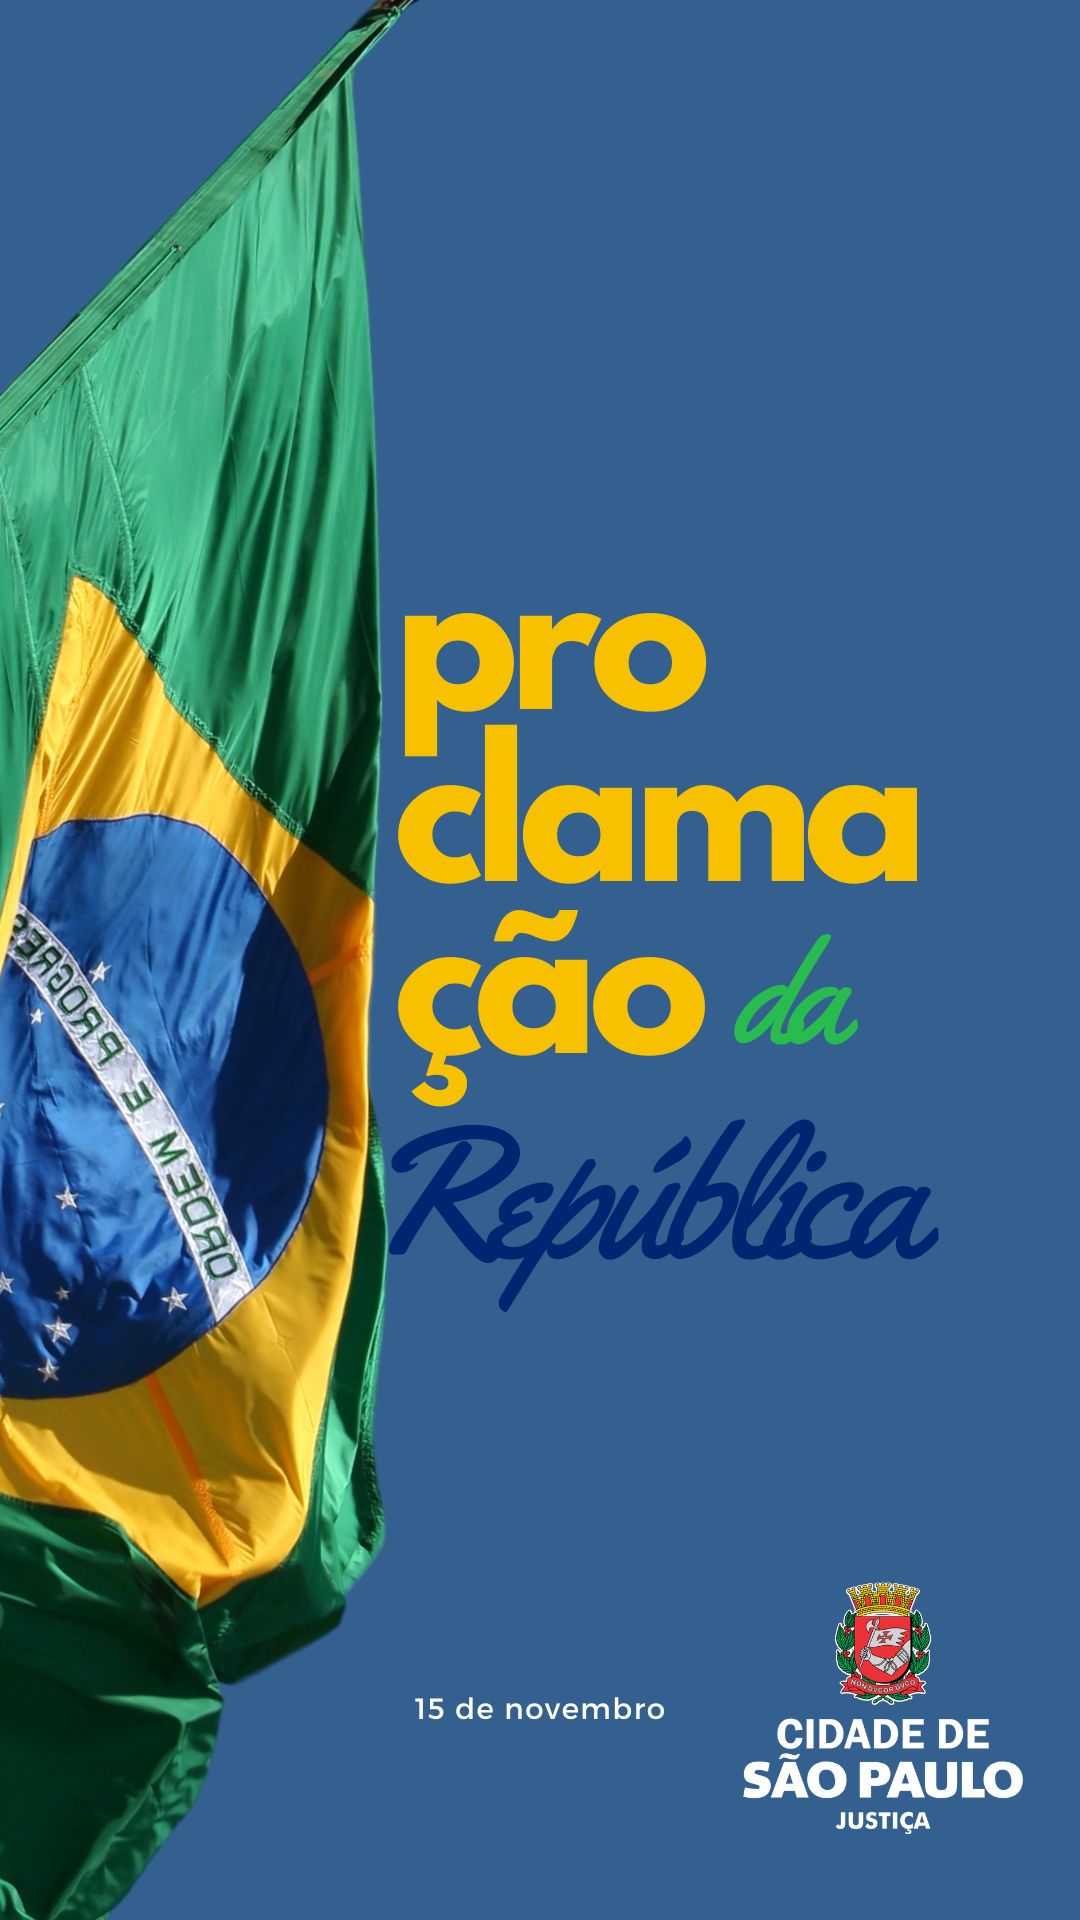 Proclamação da República (Brasil) no América Do Sul - 15 Nov